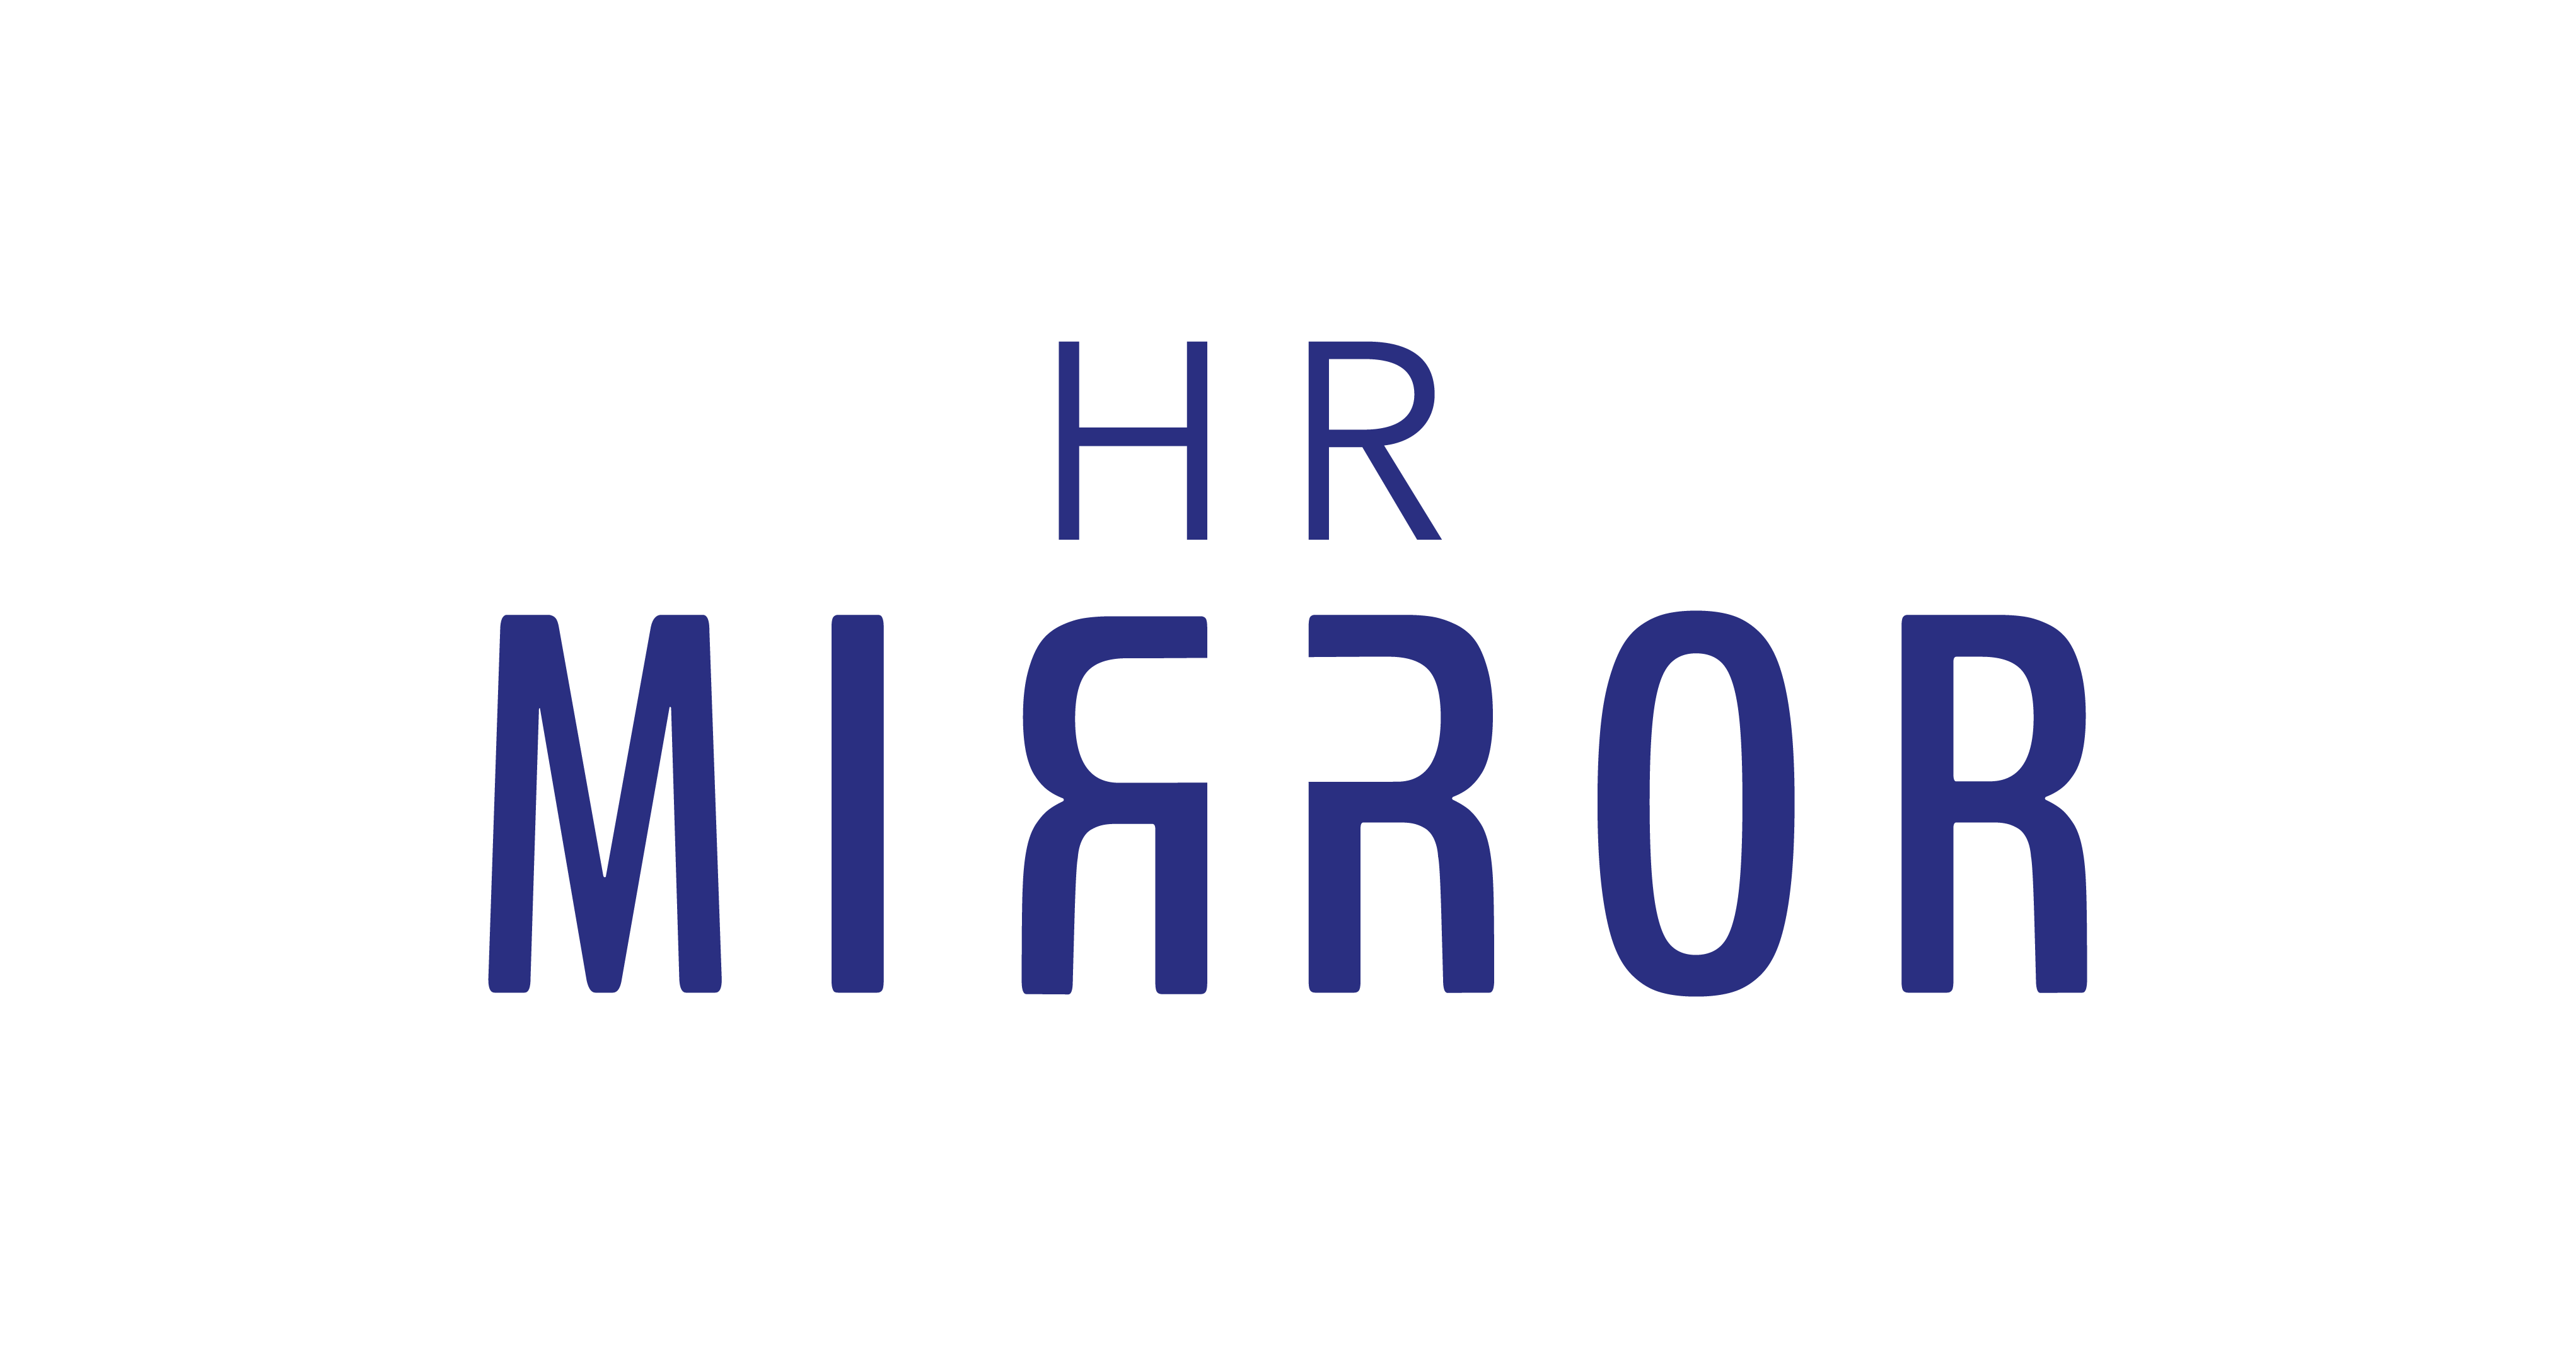 HR Mirror